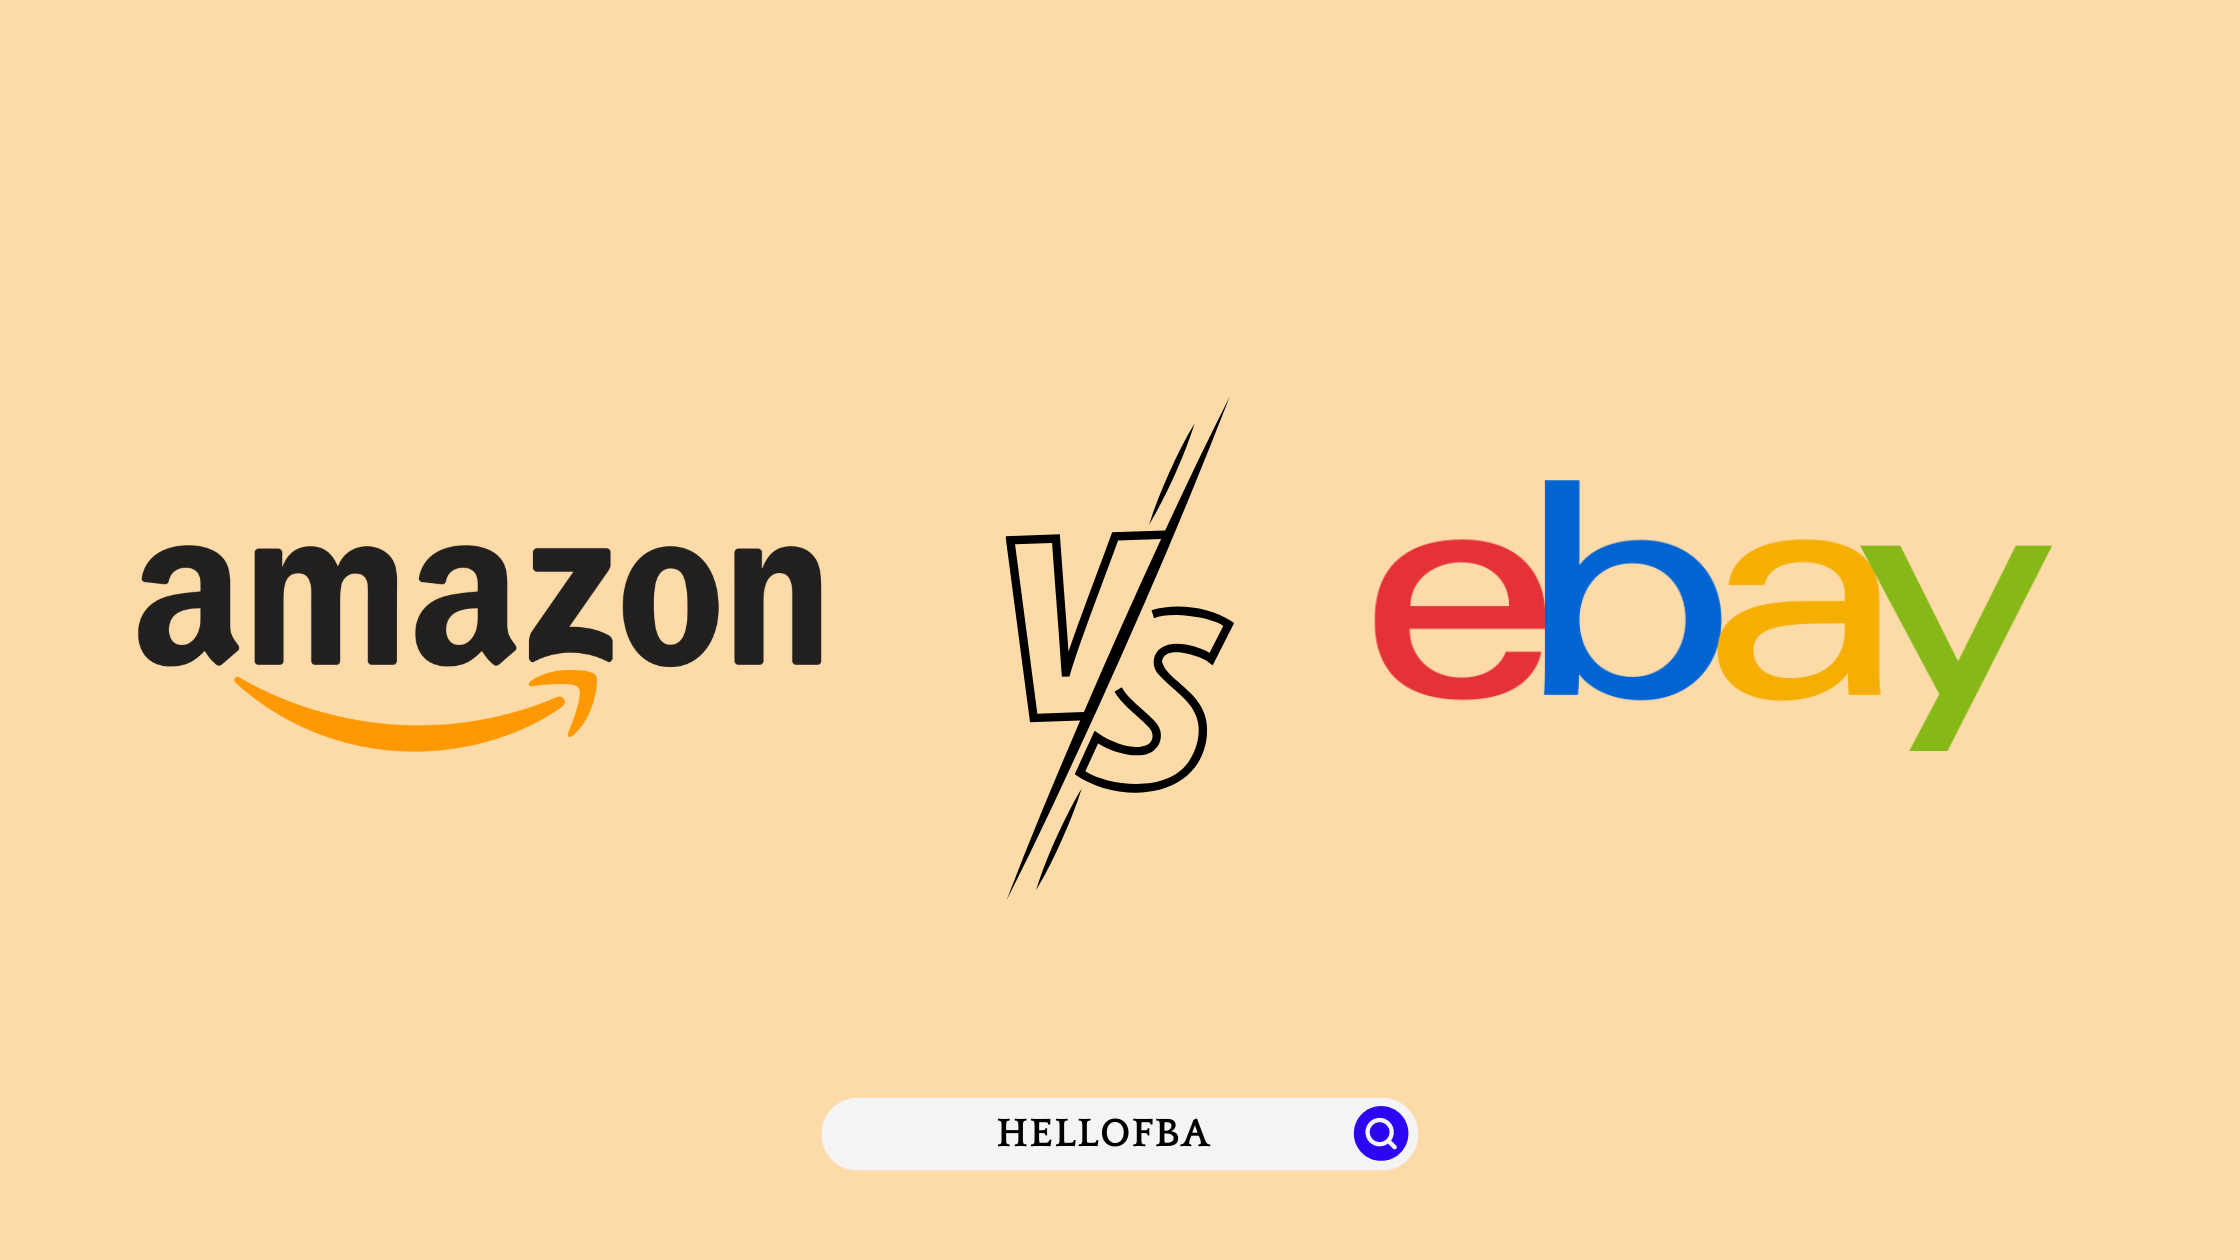 Amazon vs eBay - HelloFBA